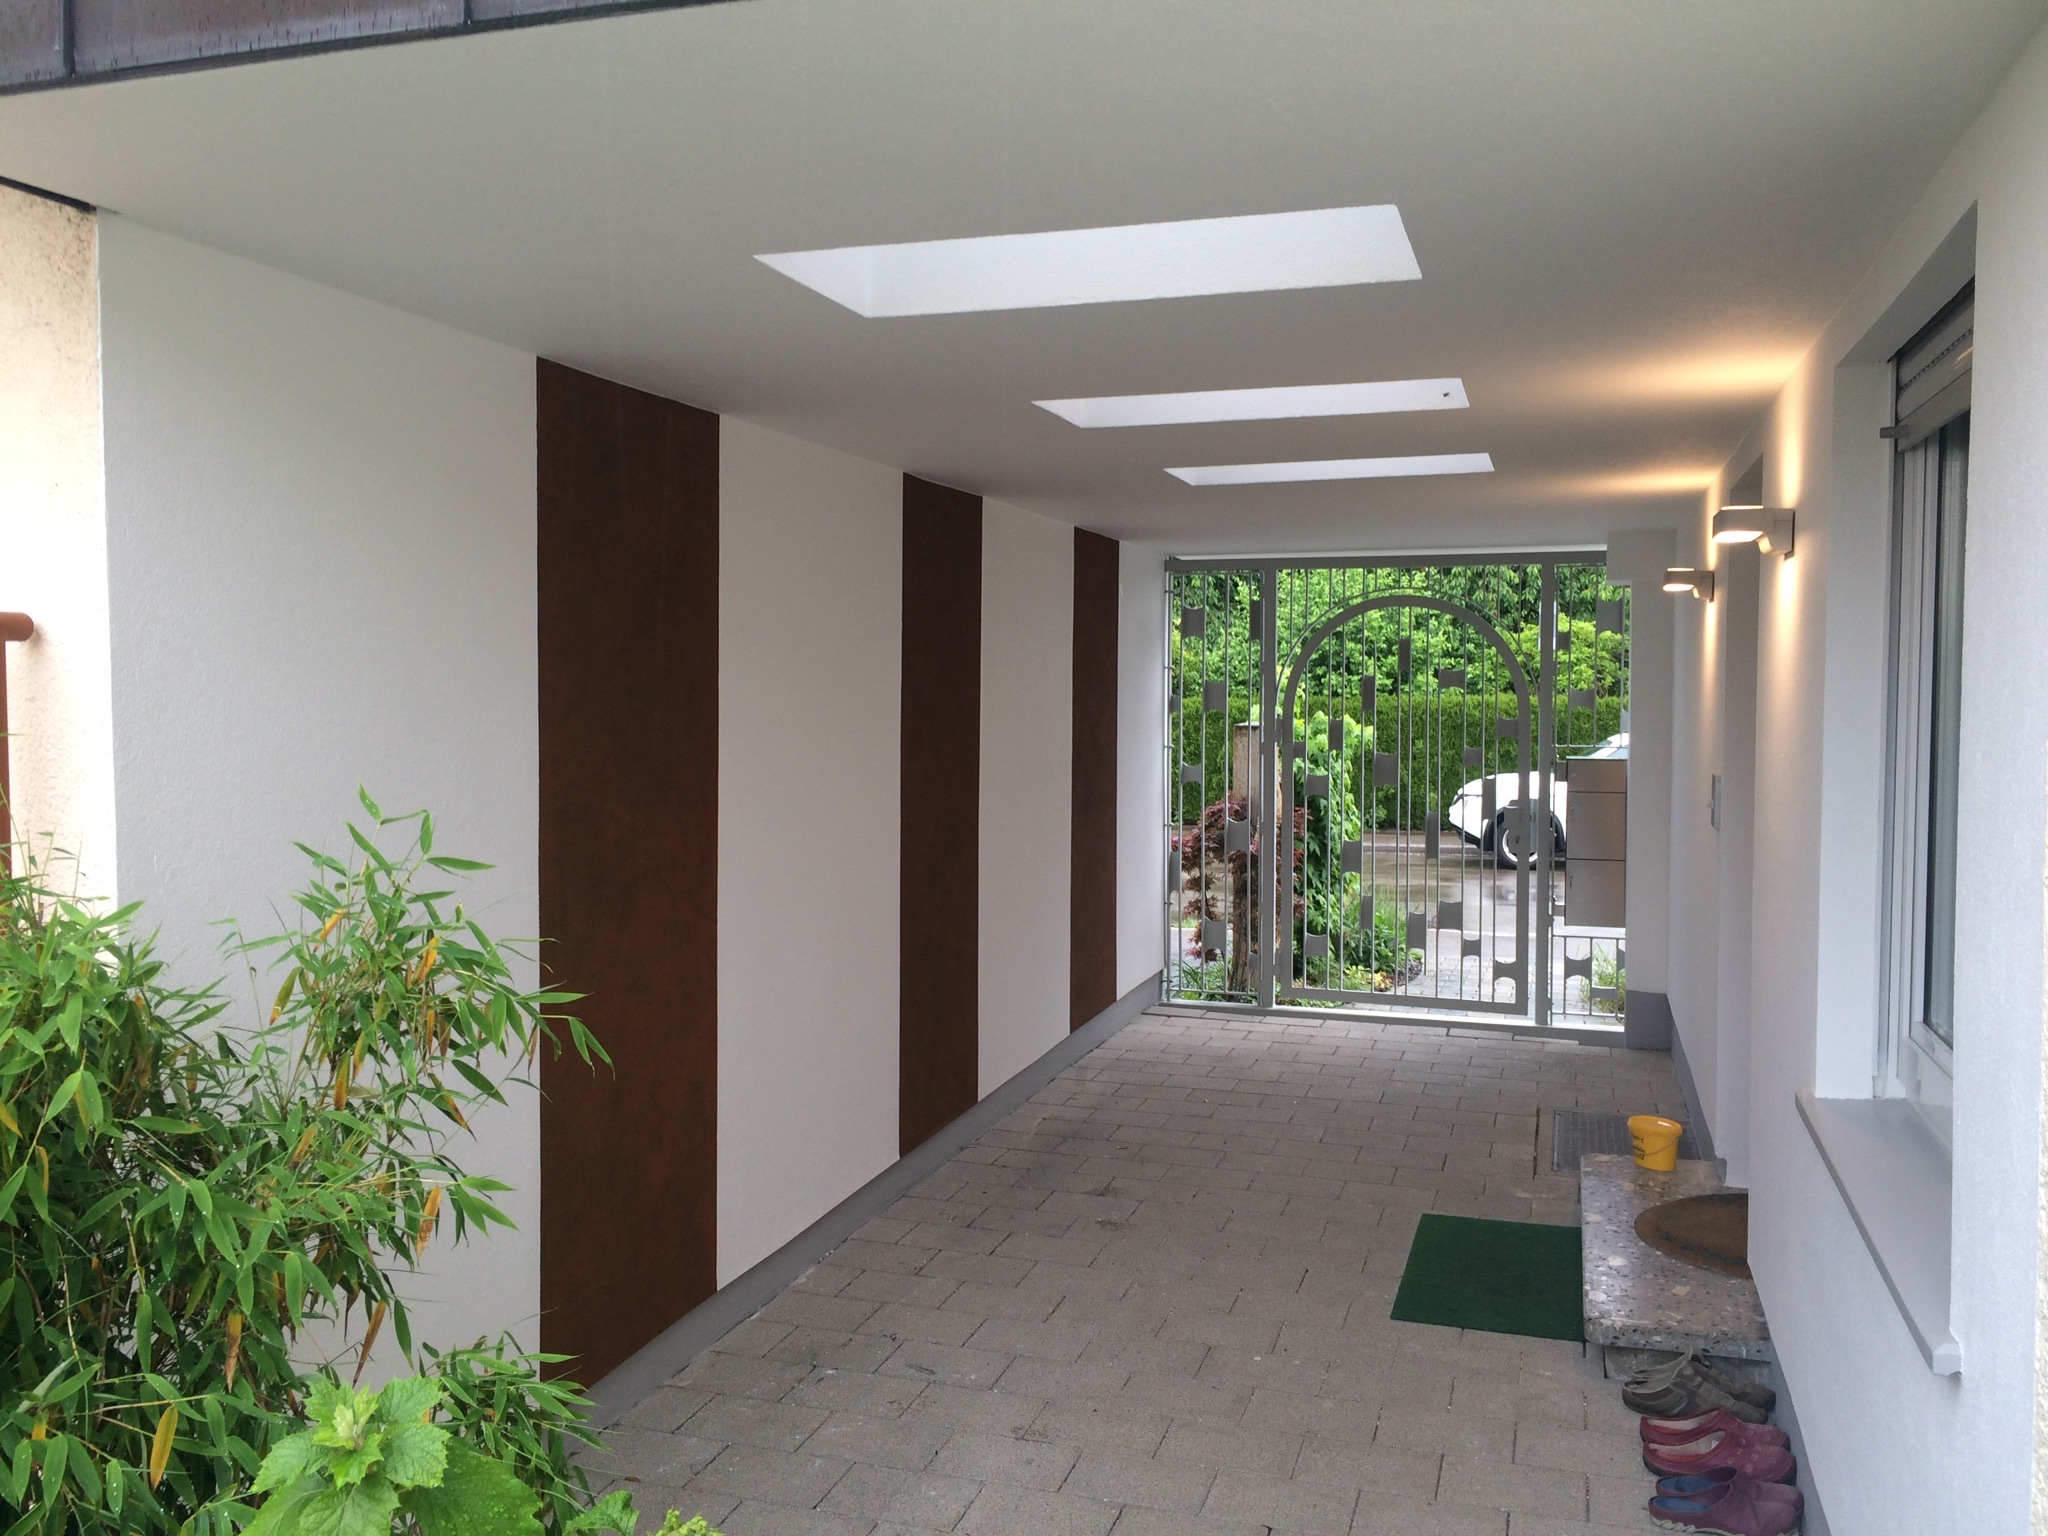 Eingangsbereich Neugestaltung mit Rostoptik Designflächen.
Hofele Stuckateur und Maler-Betrieb, Süssen, Göppingen